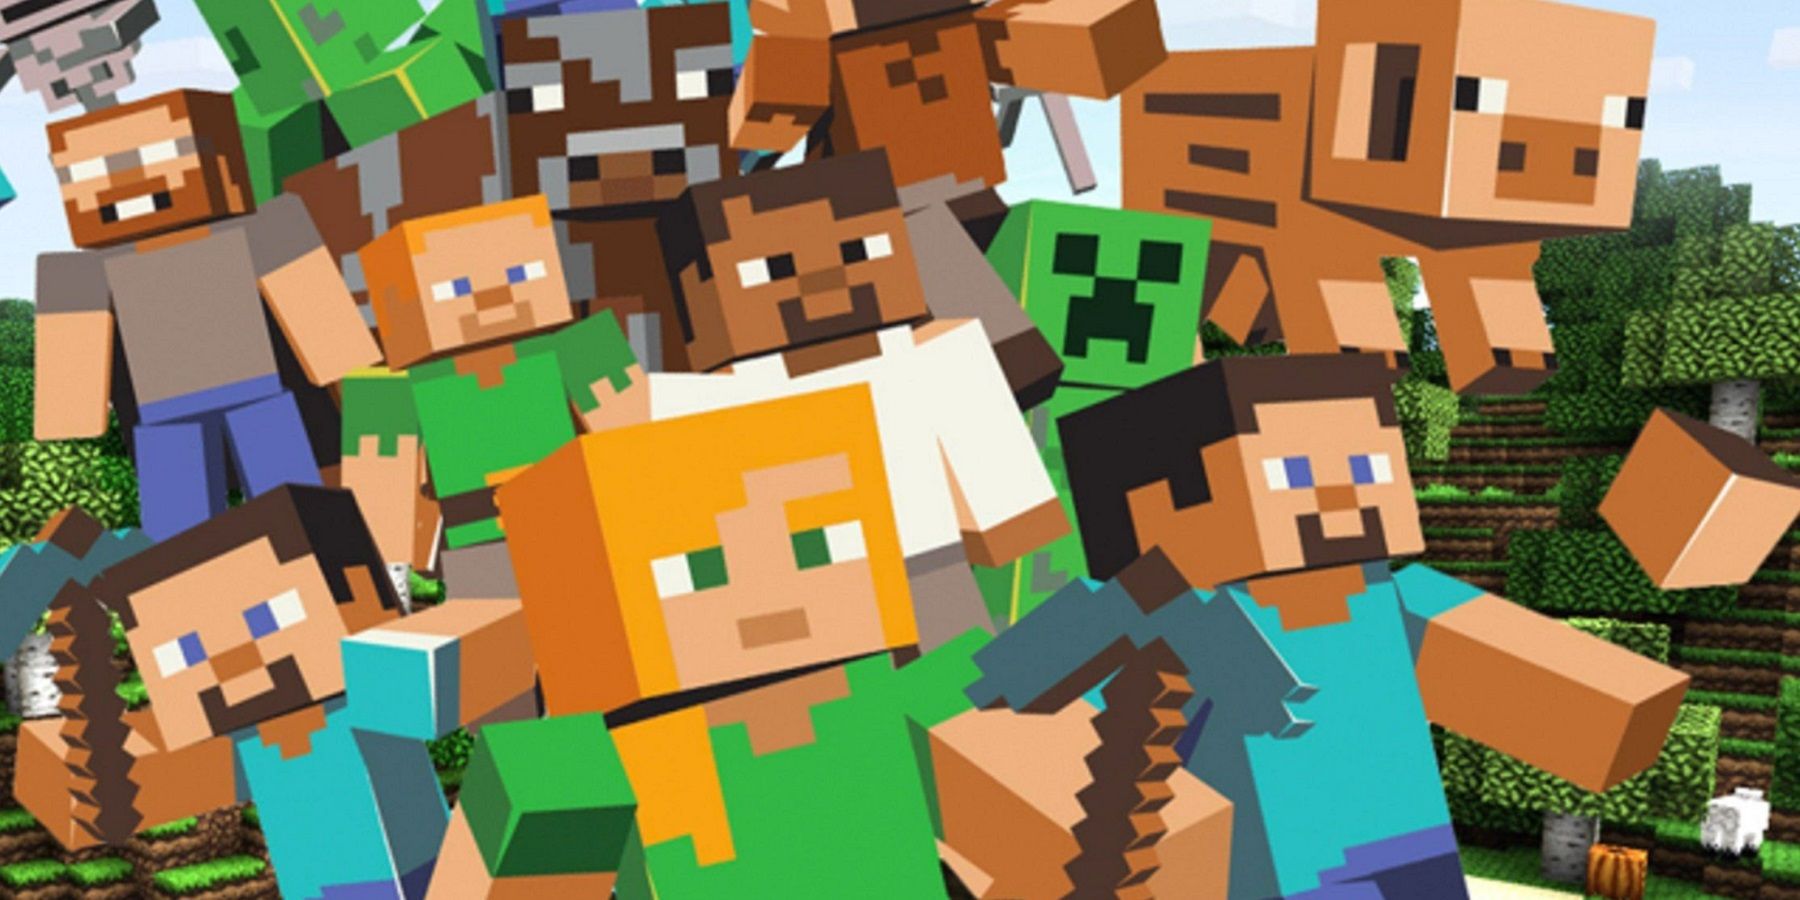 Изображение, показывающее группу персонажей Minecraft, включая Стива, крипера и свинью.